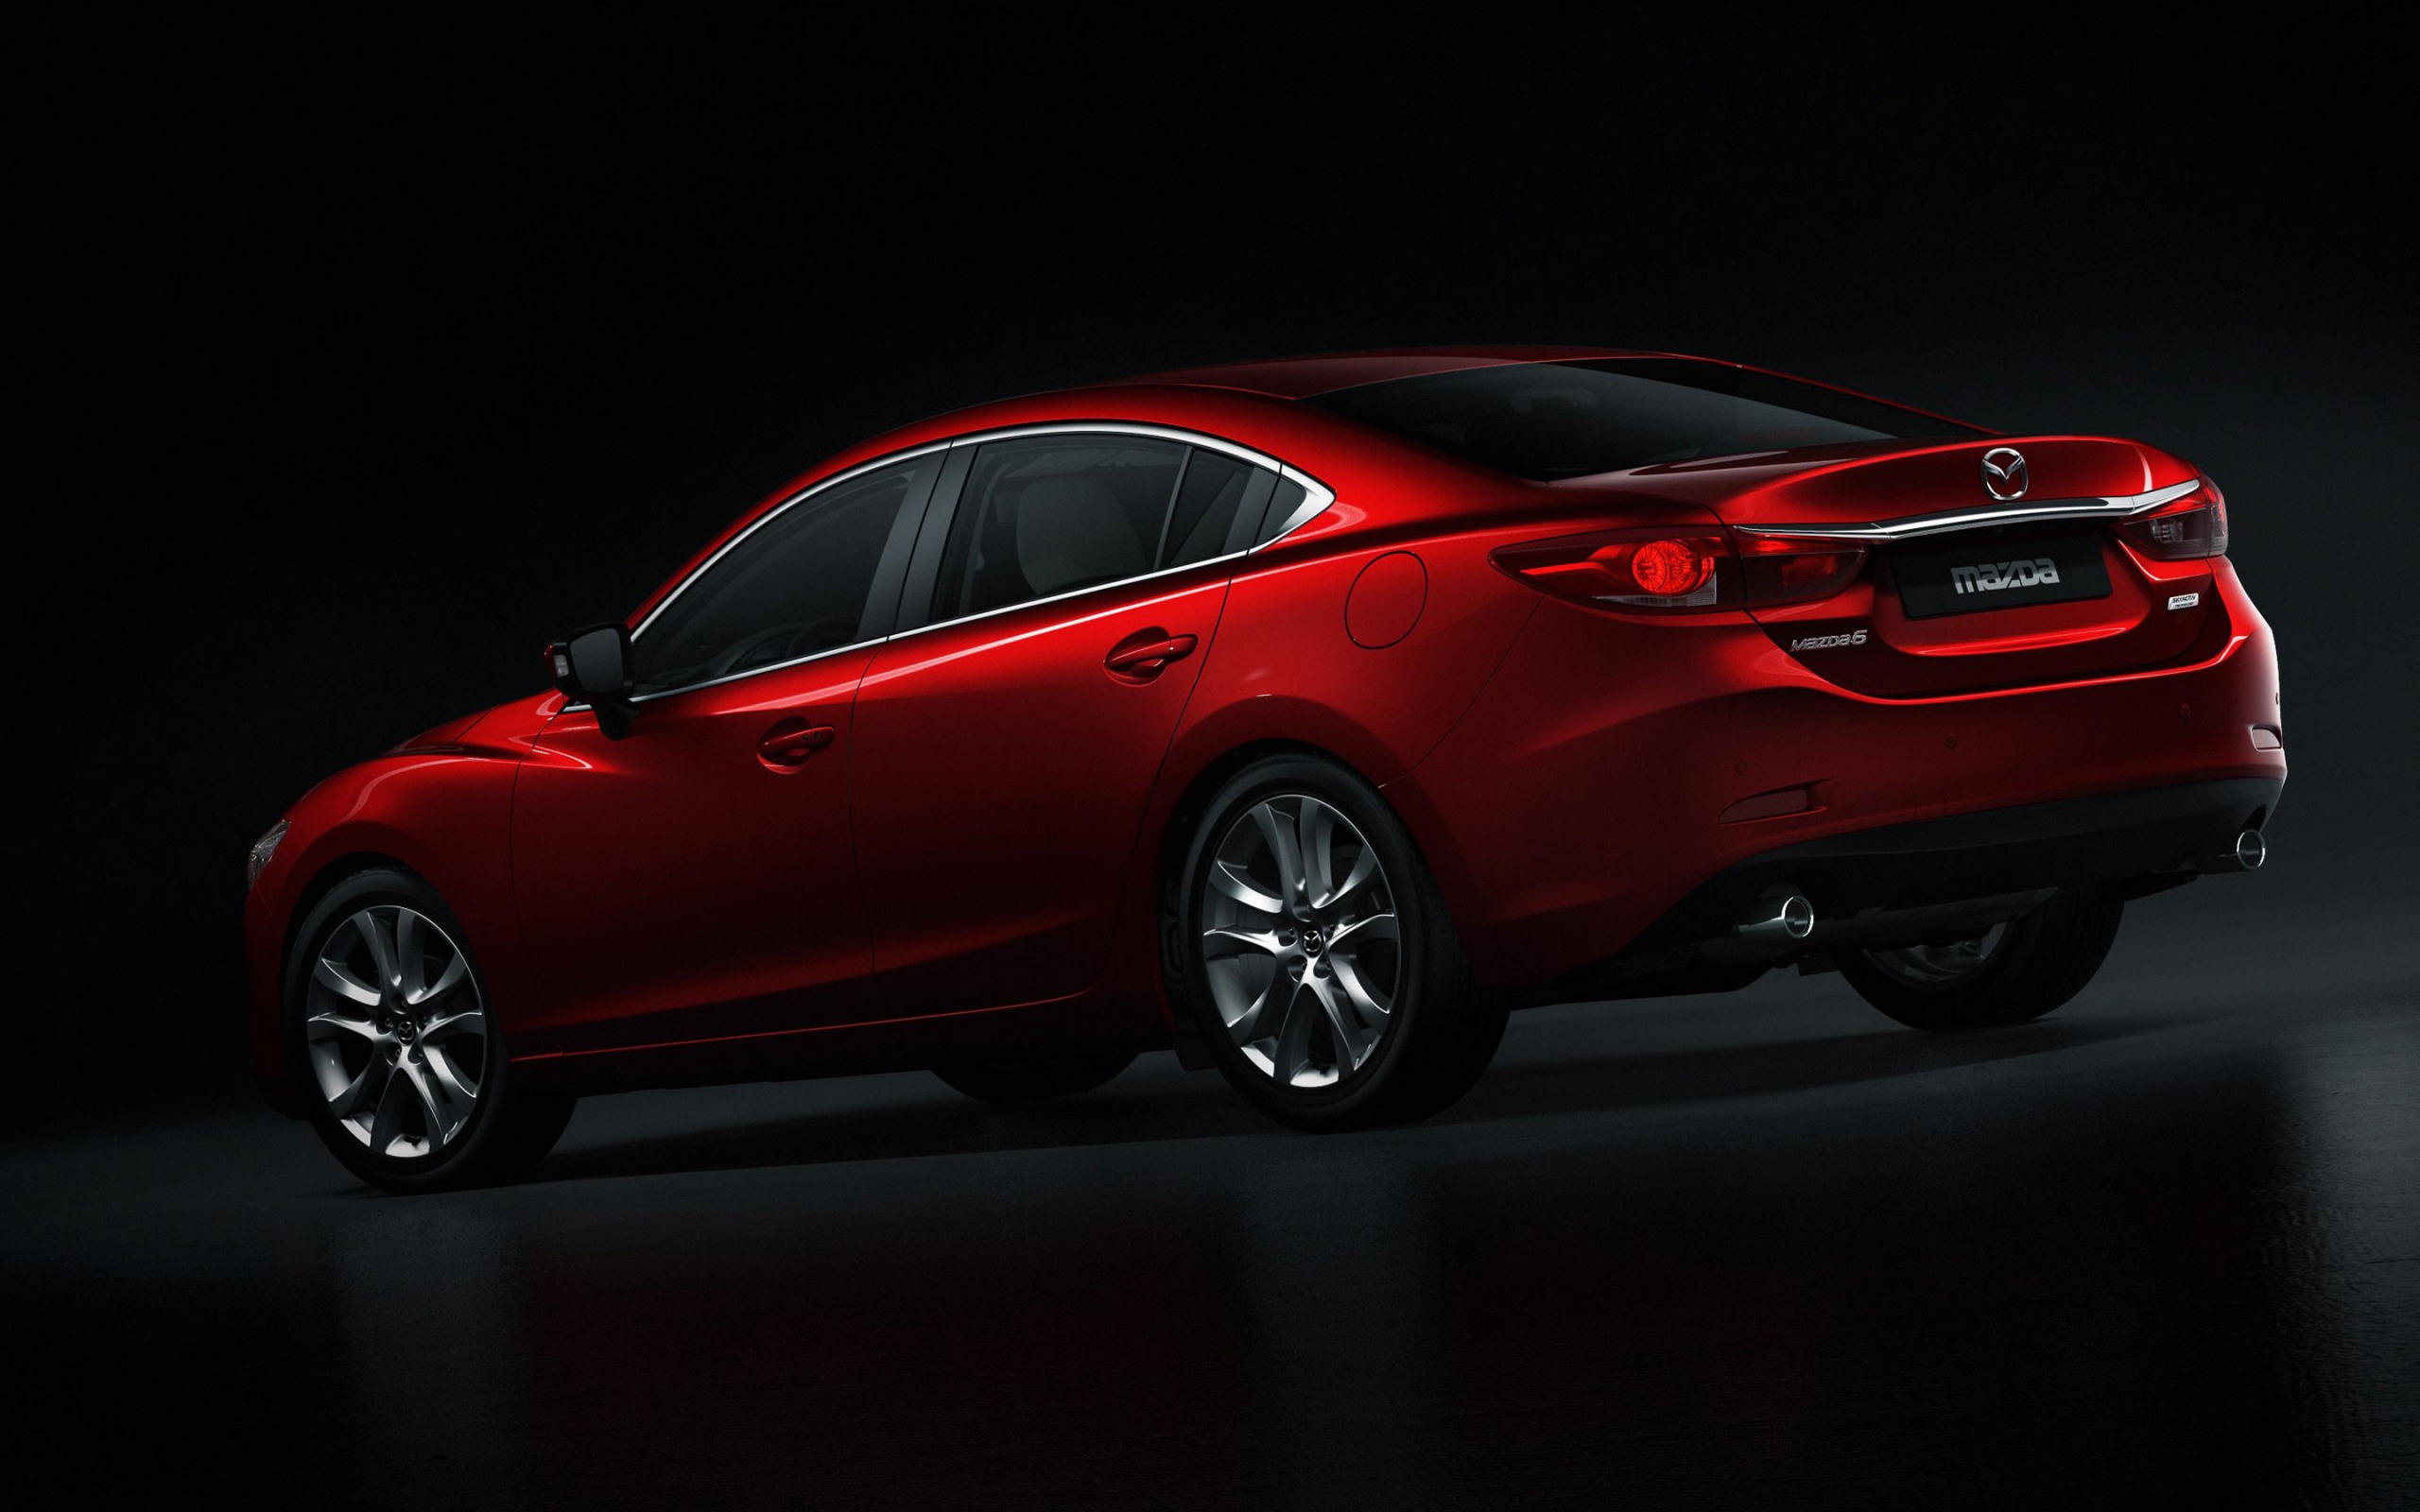 Mazda 6 2014 Rear Studio for 2560 x 1600 widescreen resolution